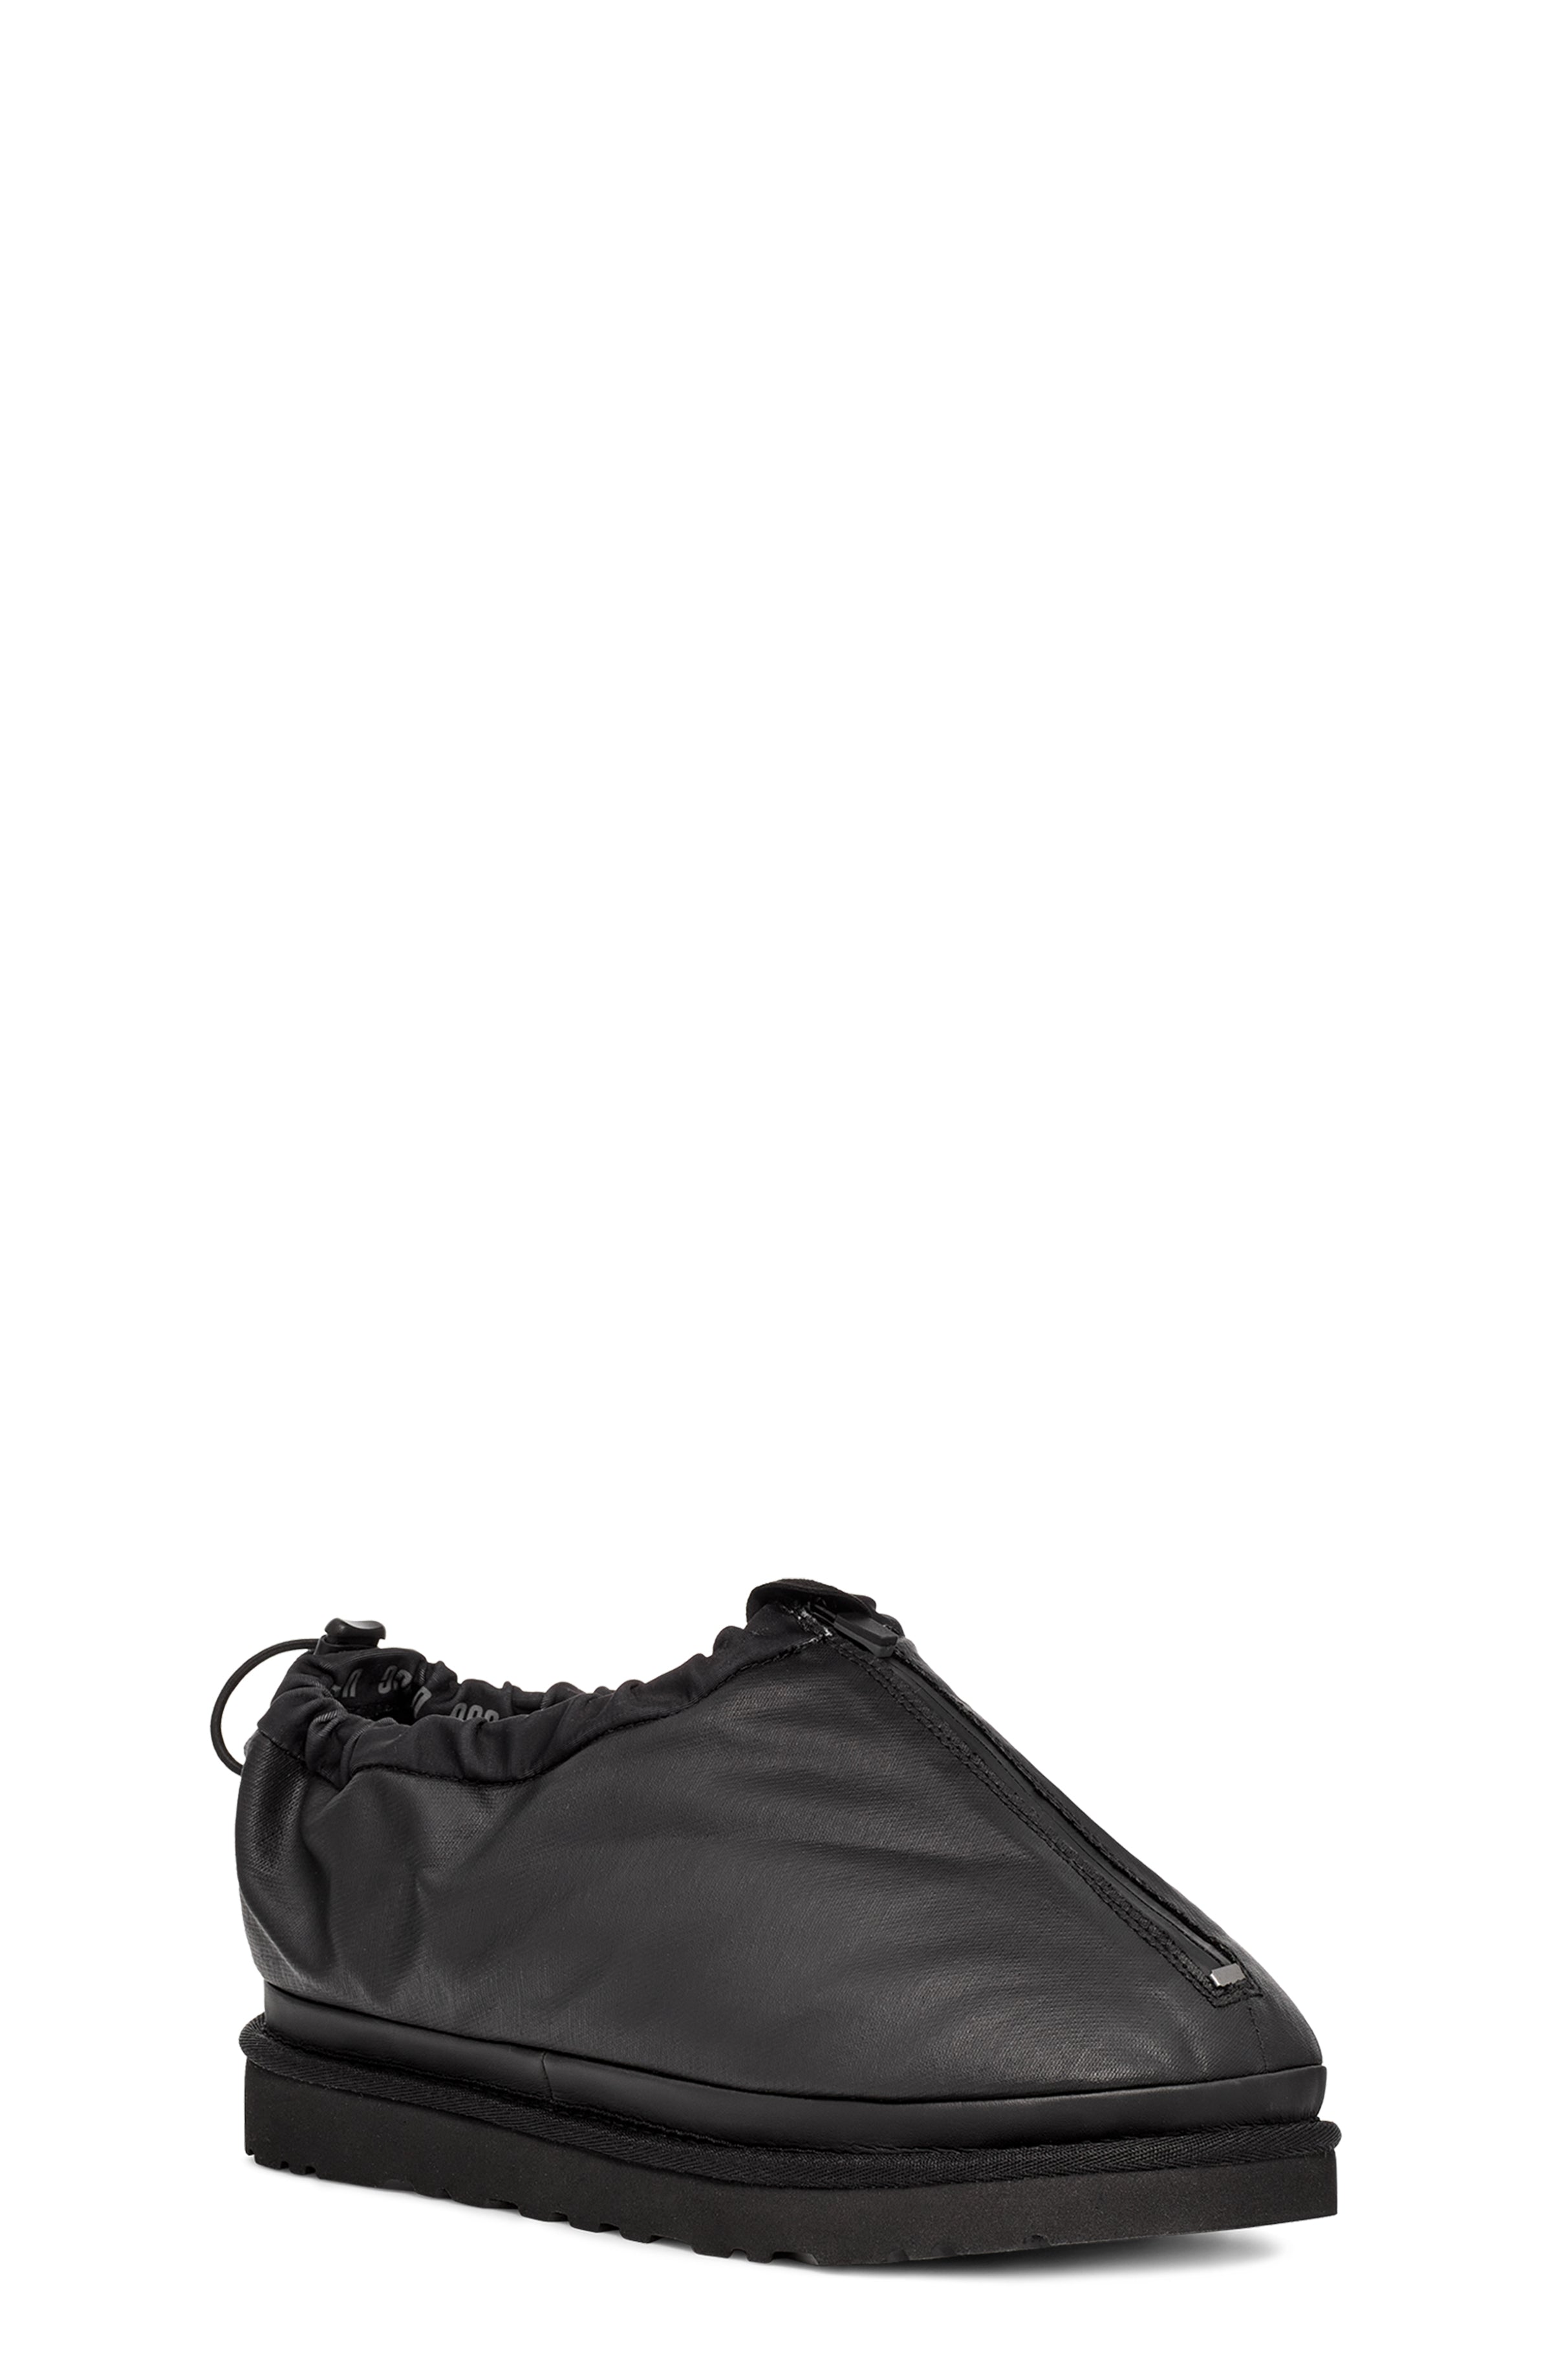 Sample UGG Tasman Shroud Zip Slippers   